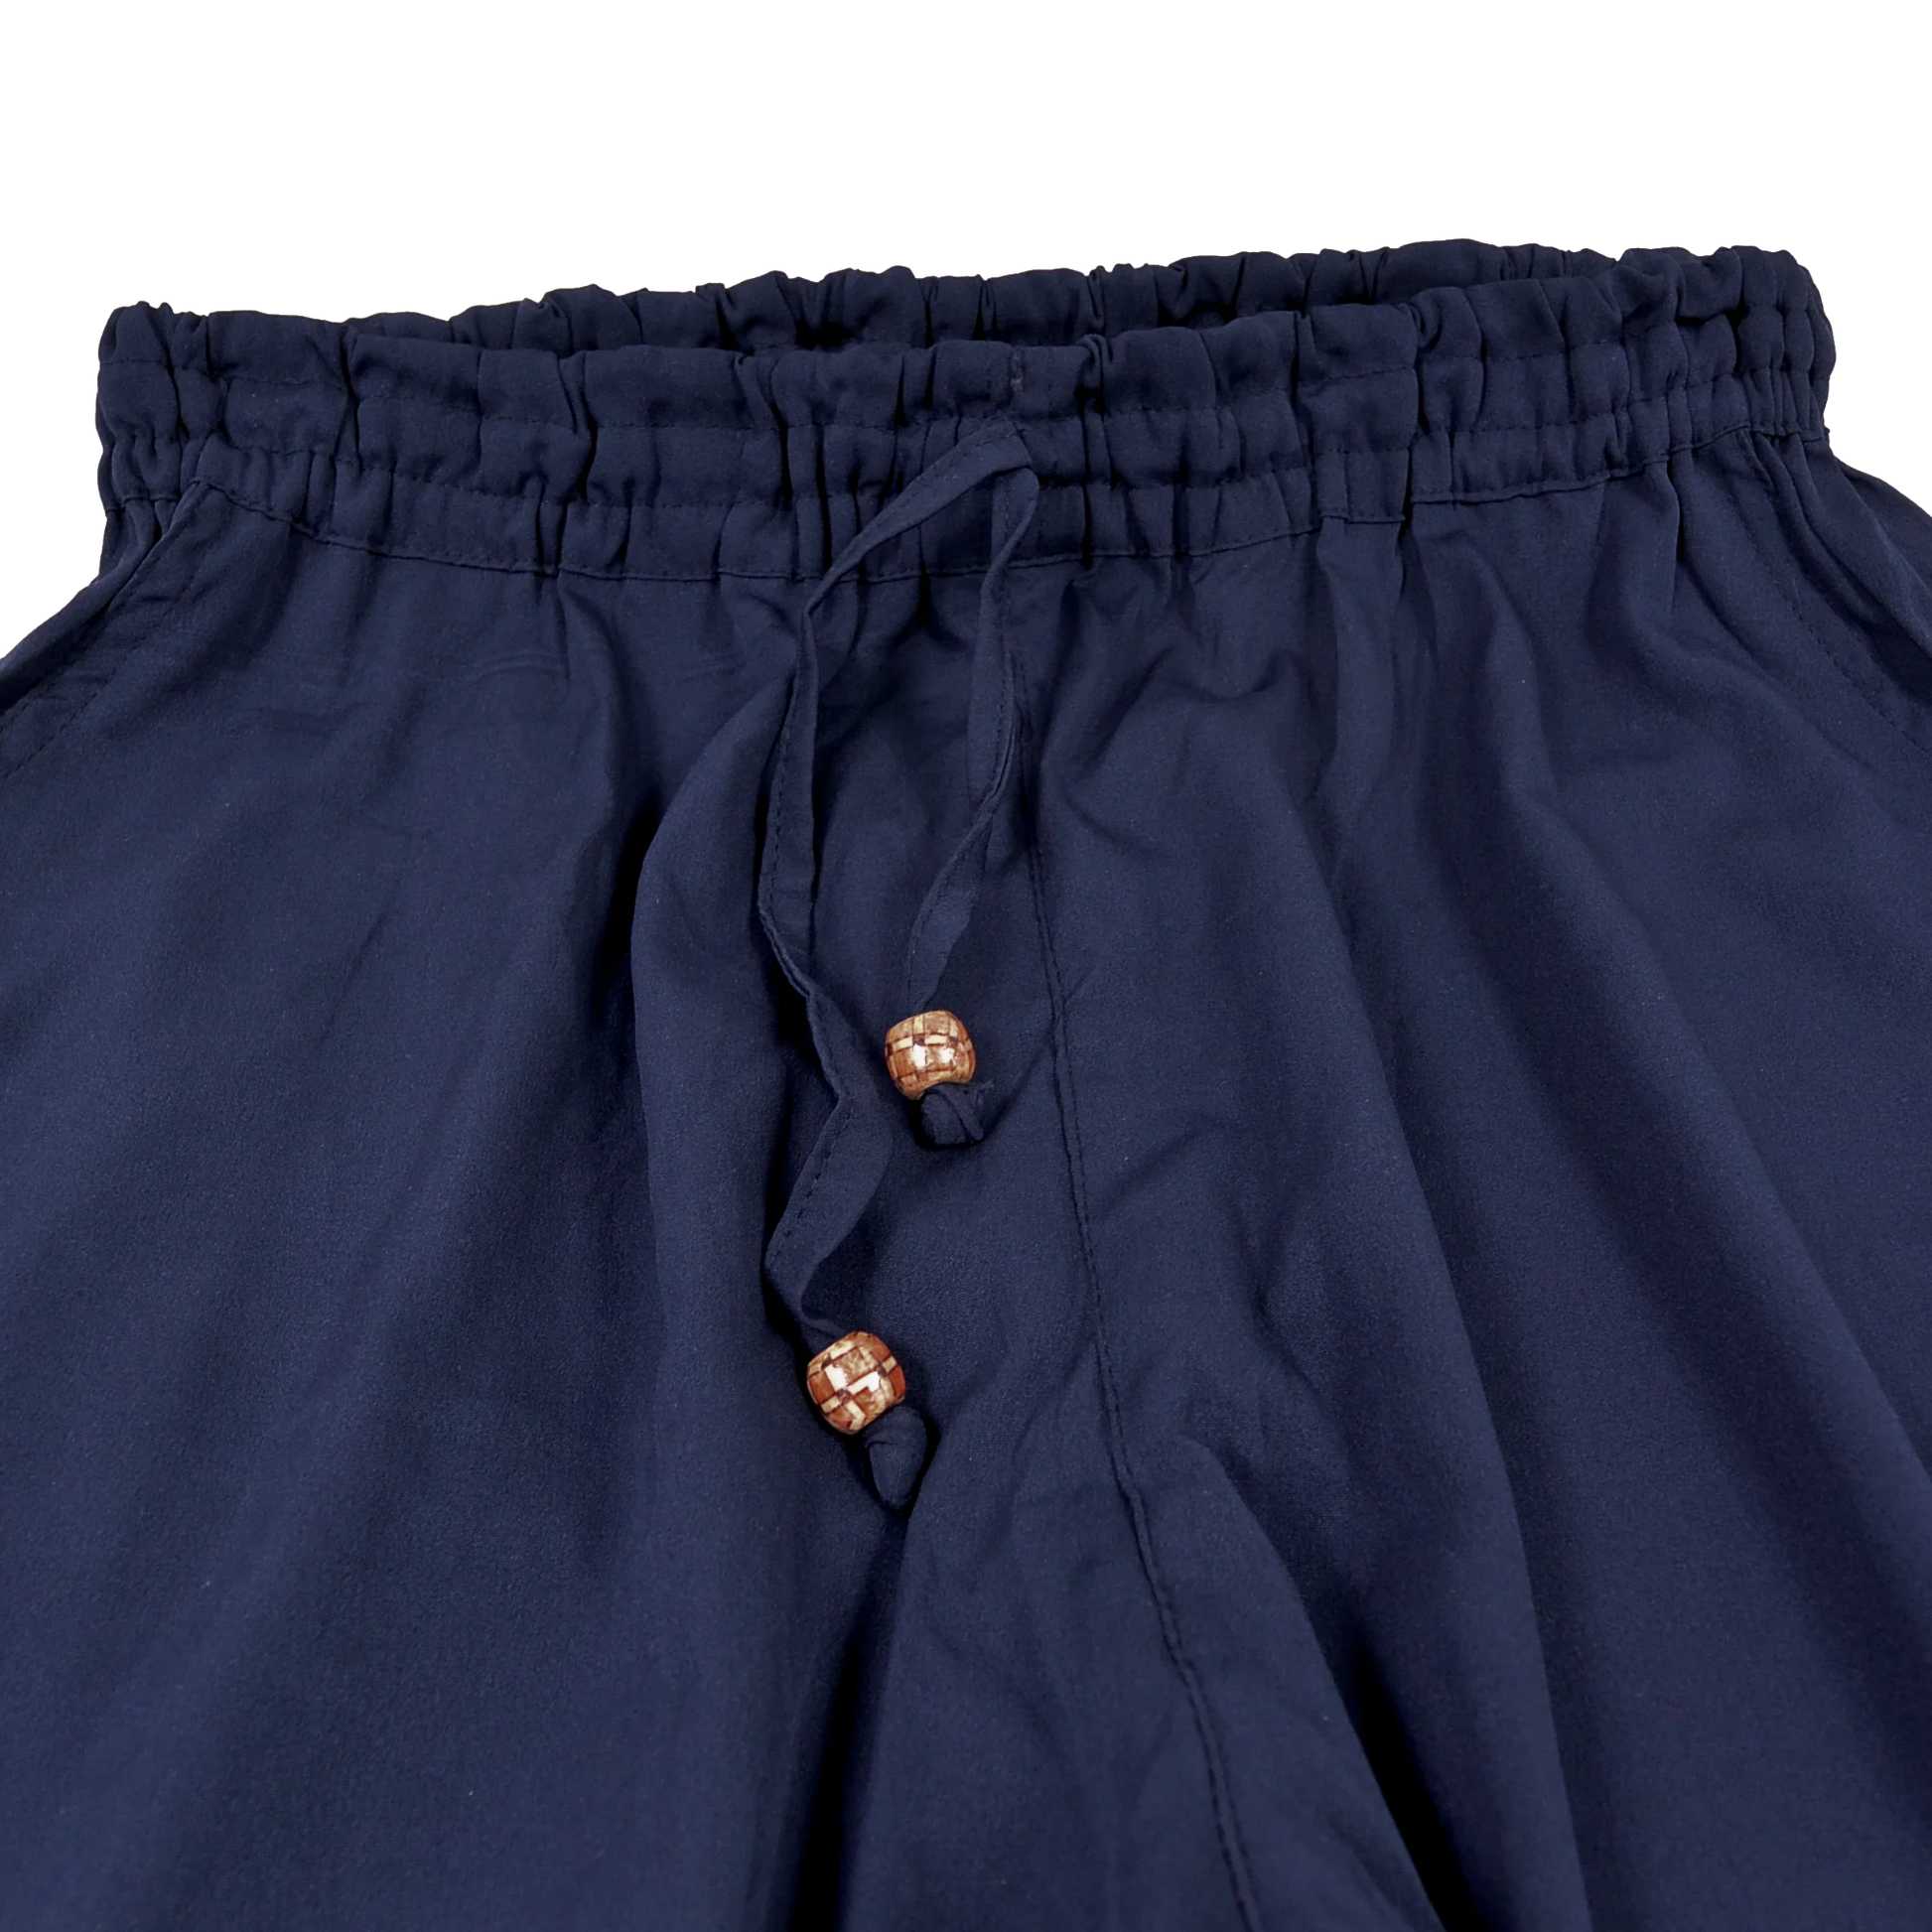 Hose aus Polyester, Violett mit elastischen Bund und Kordelzug am Saum . Zwei Holzperlen schmücken die Kordelenden